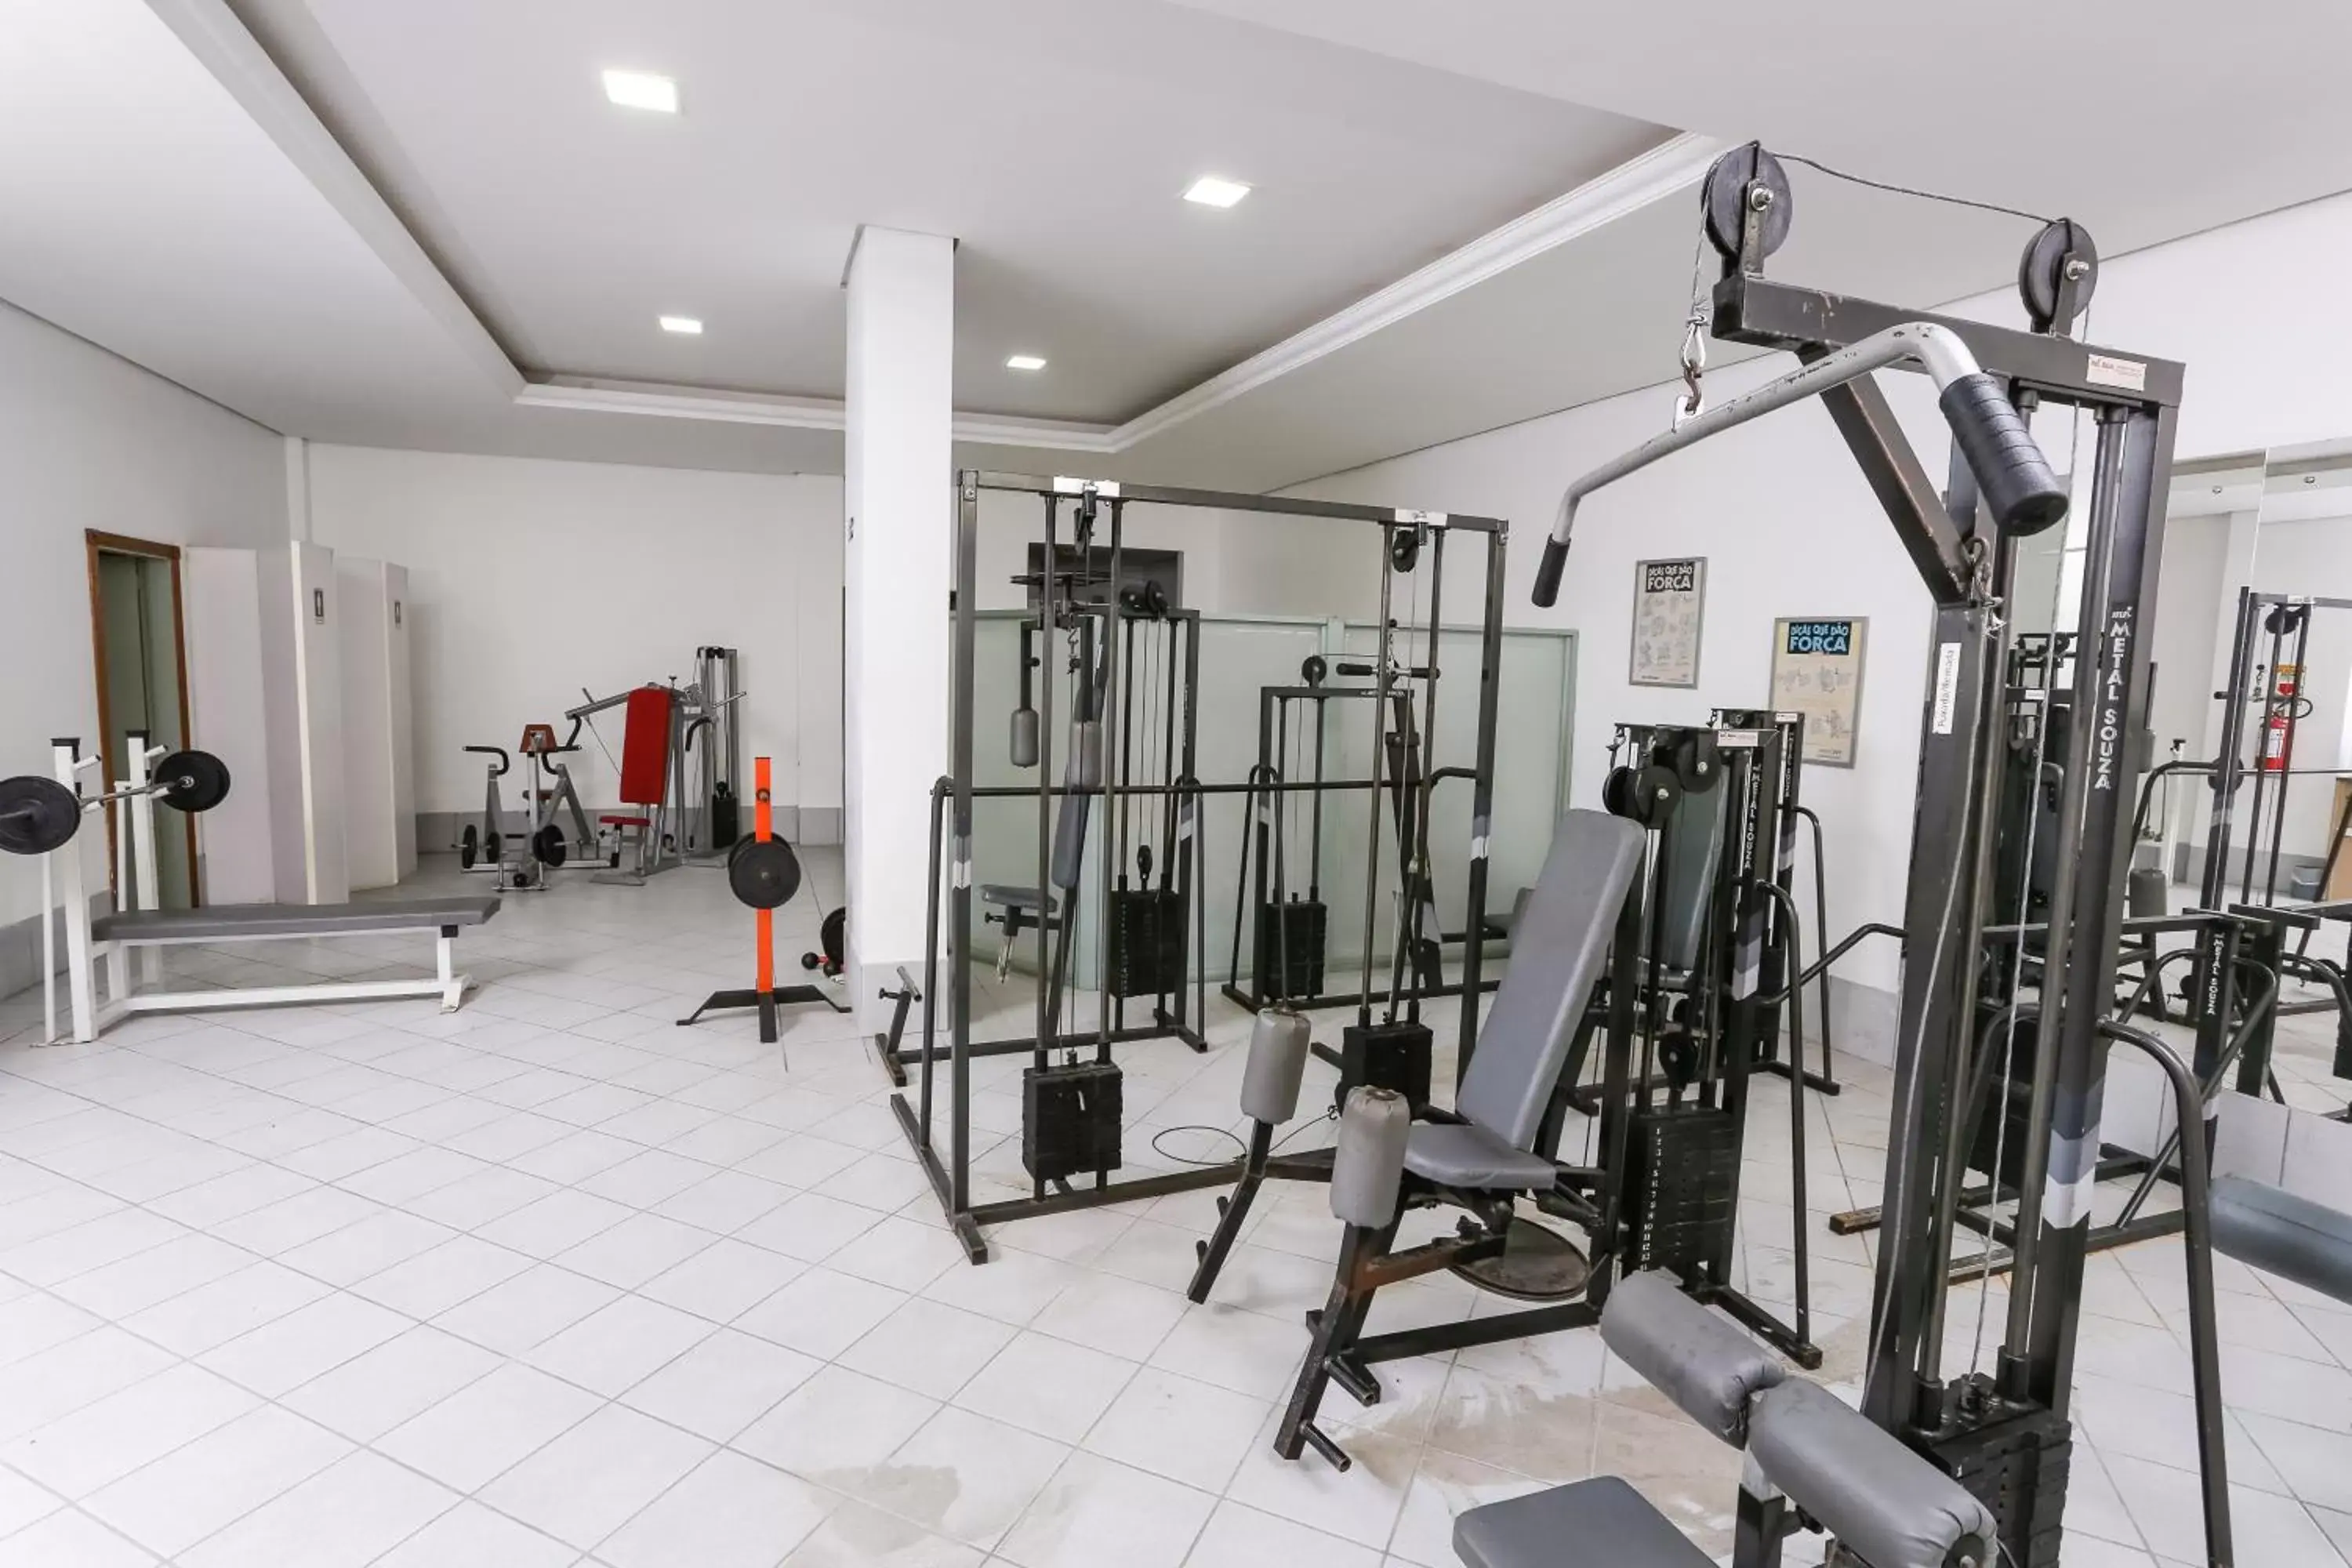 Fitness centre/facilities, Fitness Center/Facilities in Hotel Suárez Executive Novo Hamburgo